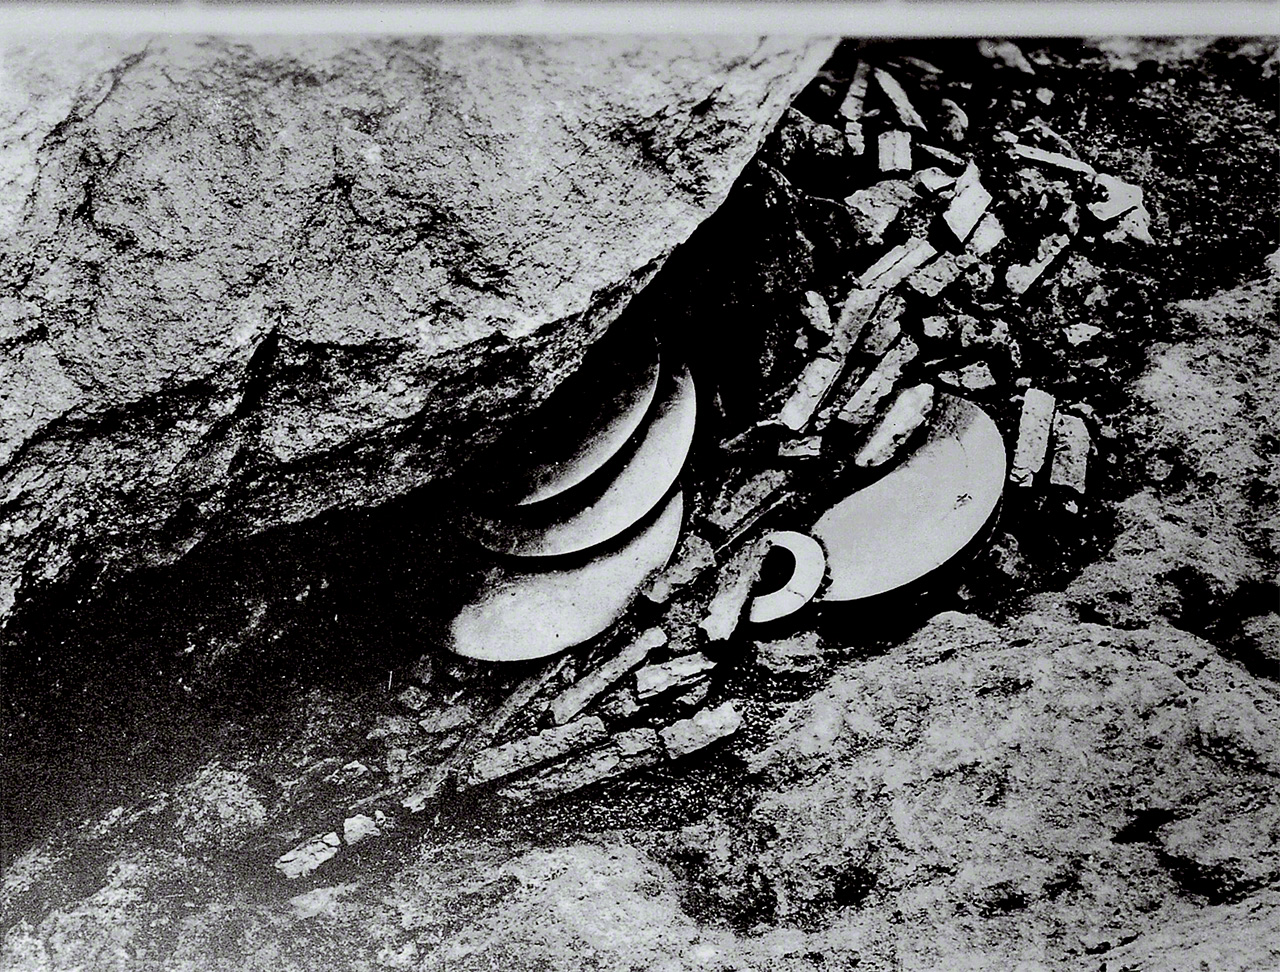 Reliquias desenterradas en el Sitio No. 17. Se hallaron hasta 21 espejos apilados hacia arriba, colocados en los espacios entre las enormes rocas.